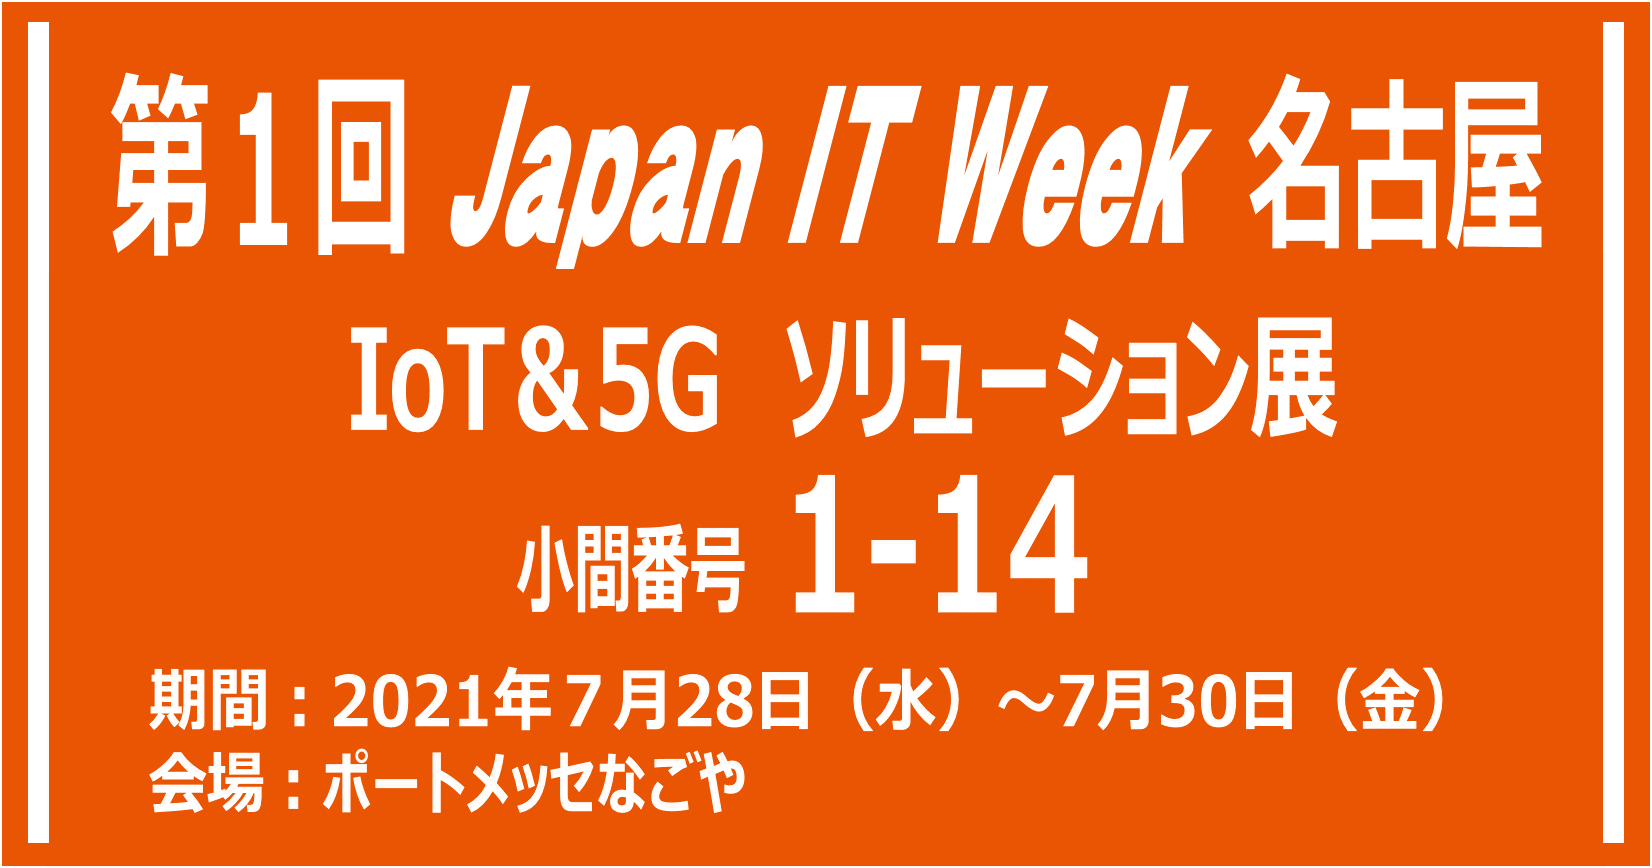 7/28〜7/30　第1回 Japan IT Week 名古屋に出展します。